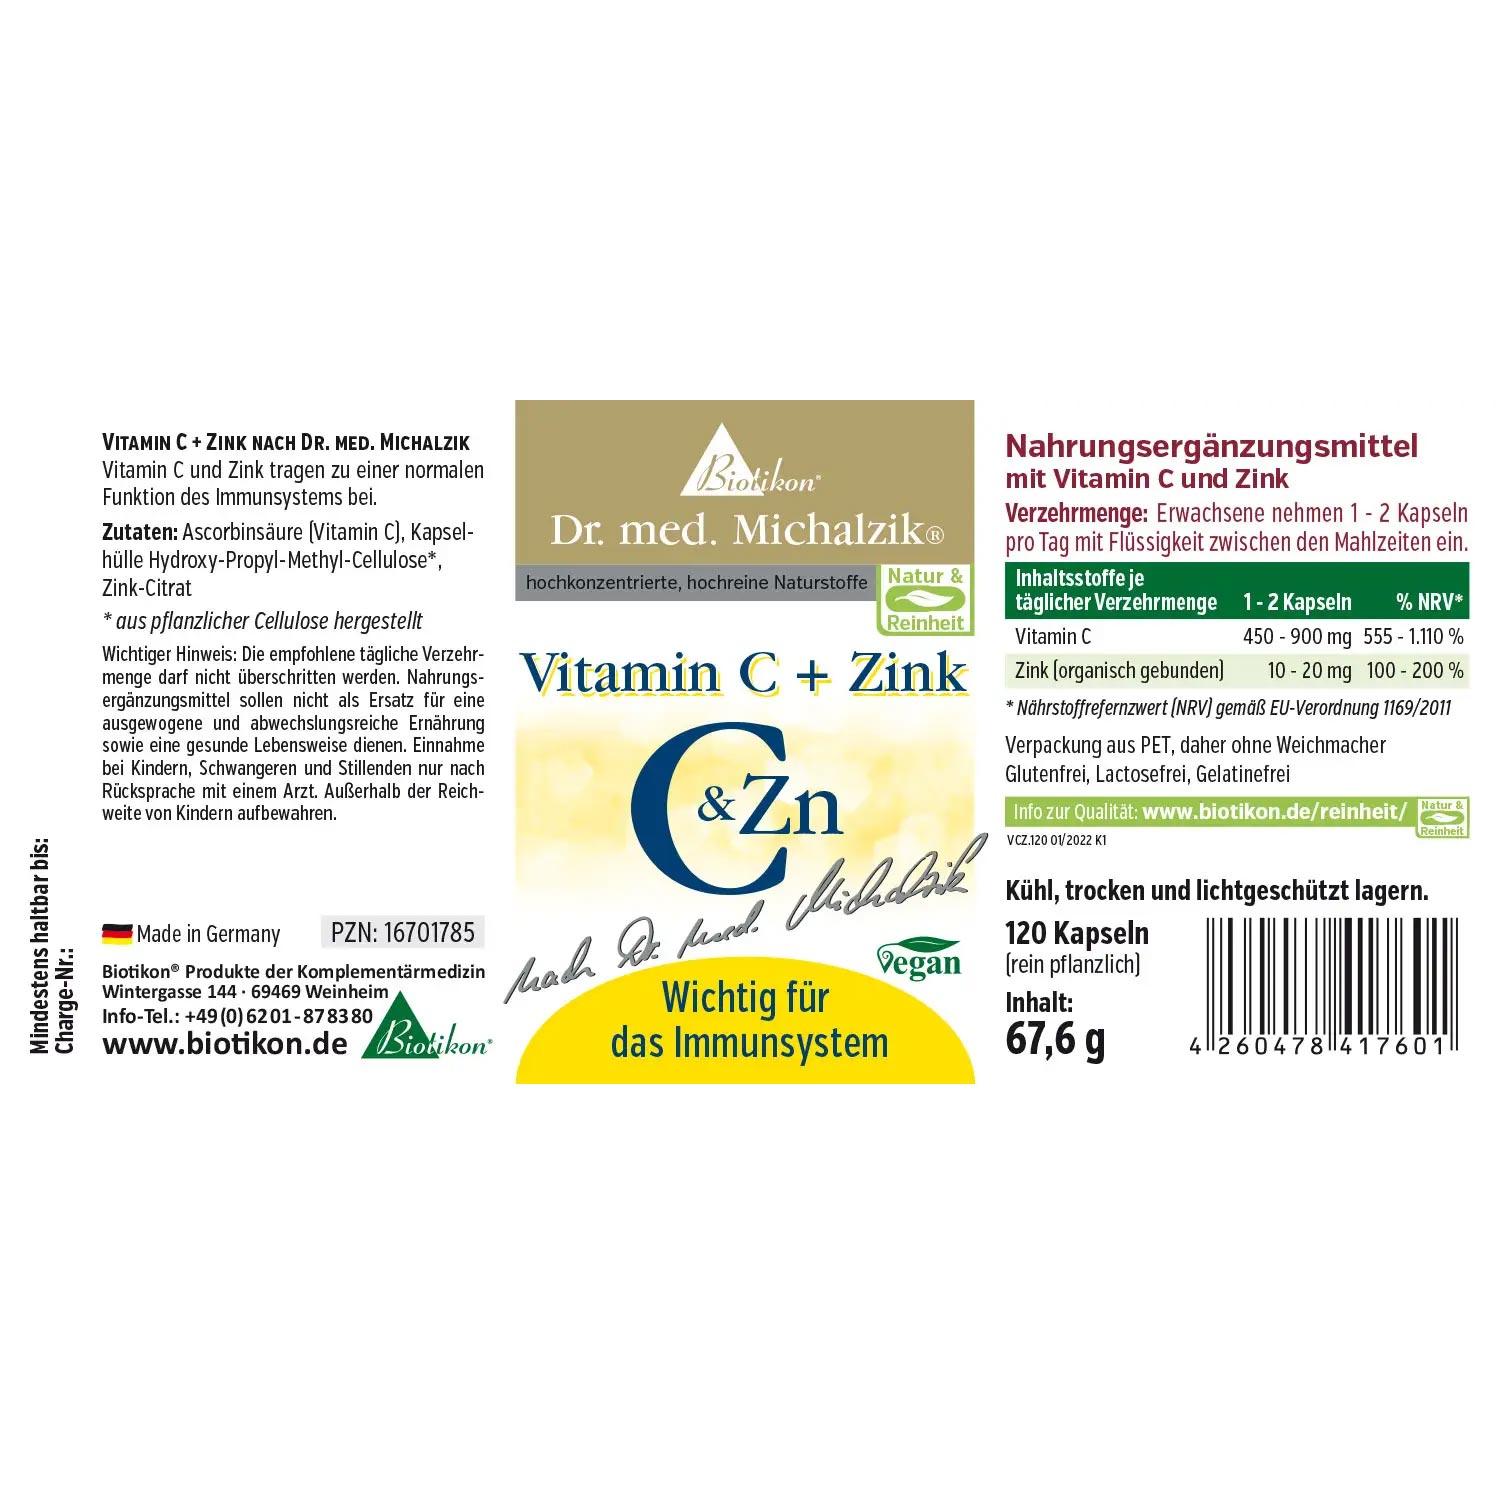 Vitamin C + Zink von Biotikon - Etikett